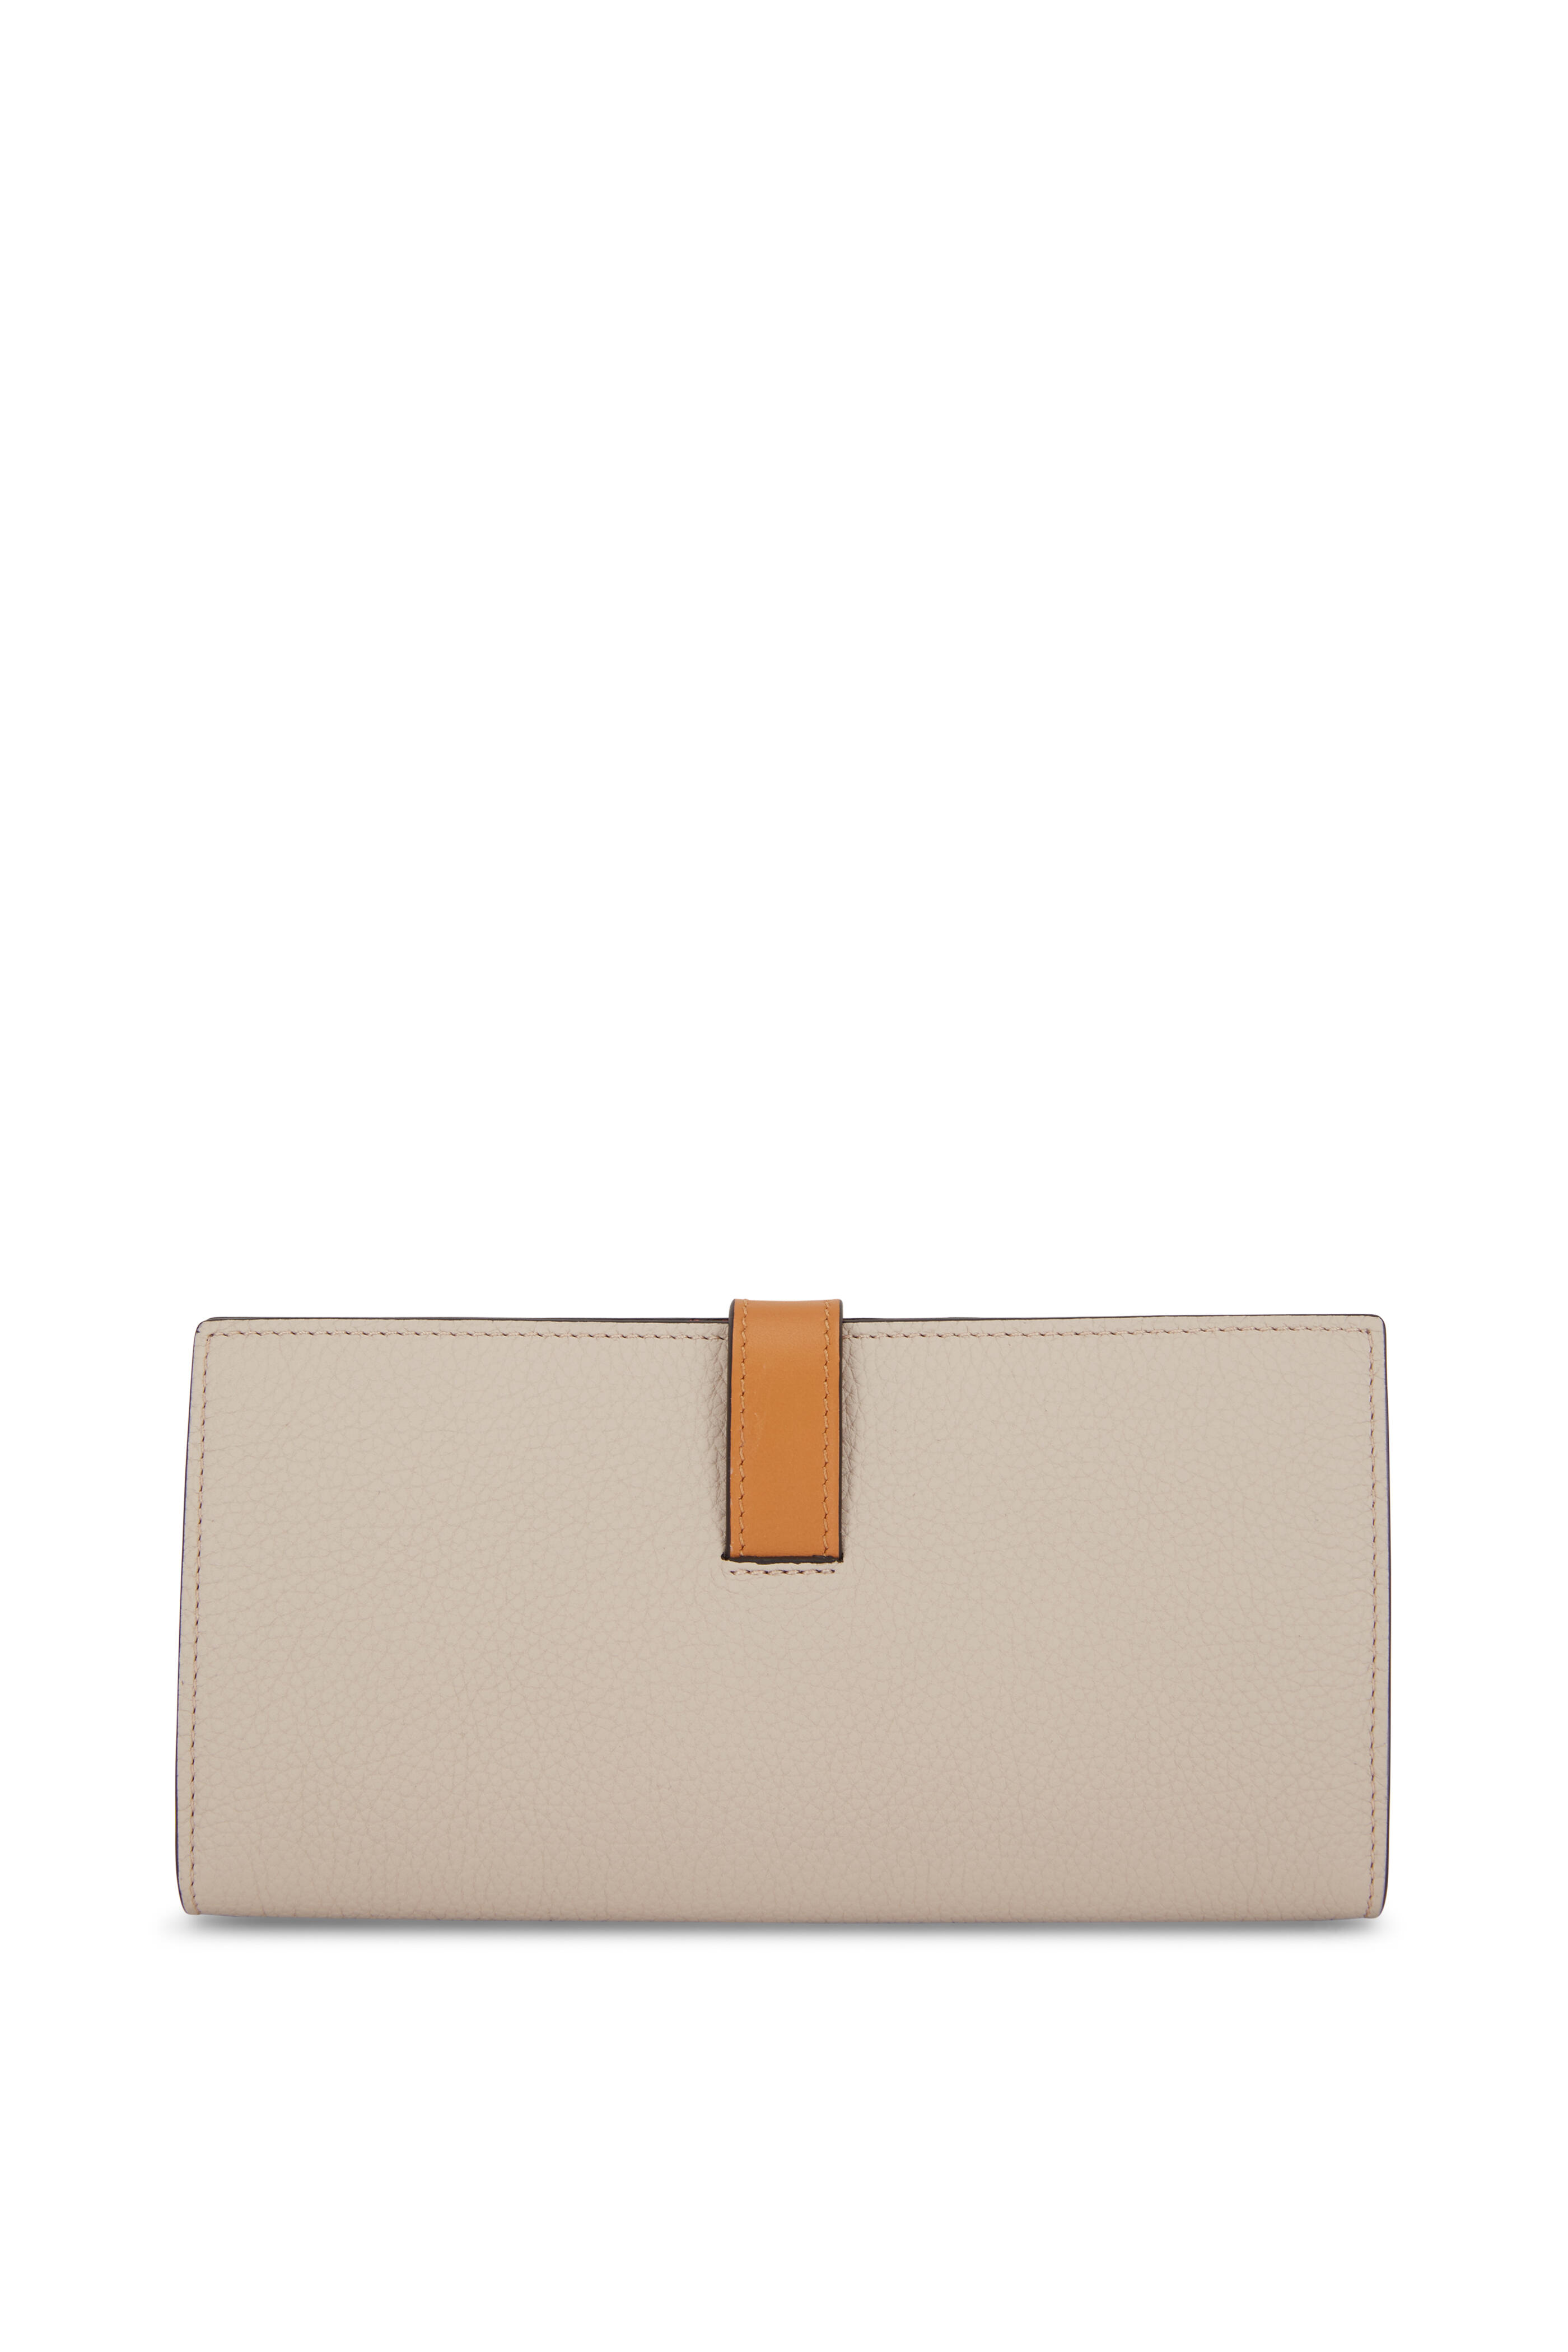 Loewe Women's Luxury Trifold Wallet in Soft Grained Calfskin - Brown - Wallets